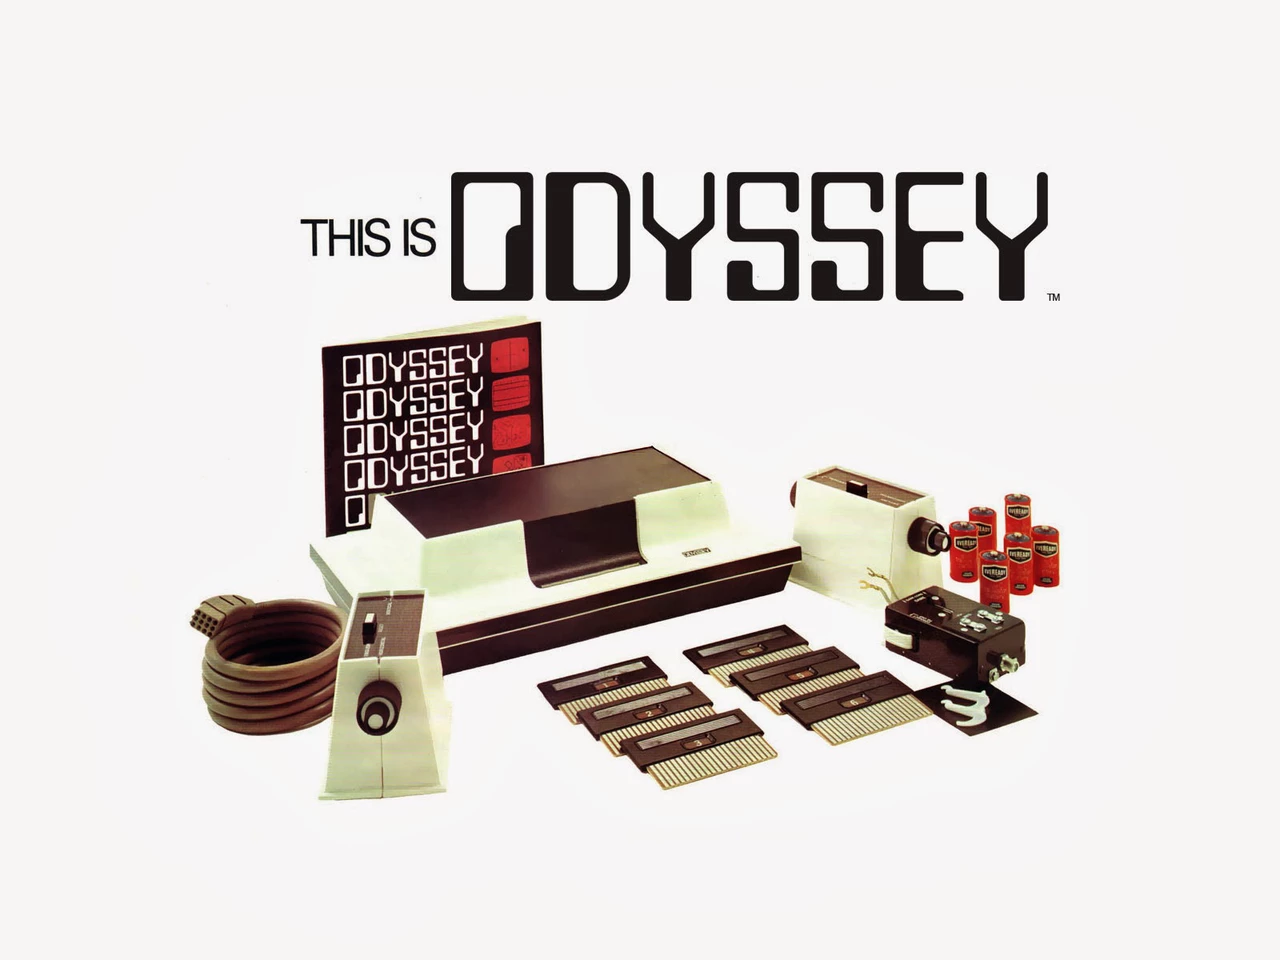 Un día como hoy comienza a fabricar "Odyssey", la primera consola de videojuegos comercial